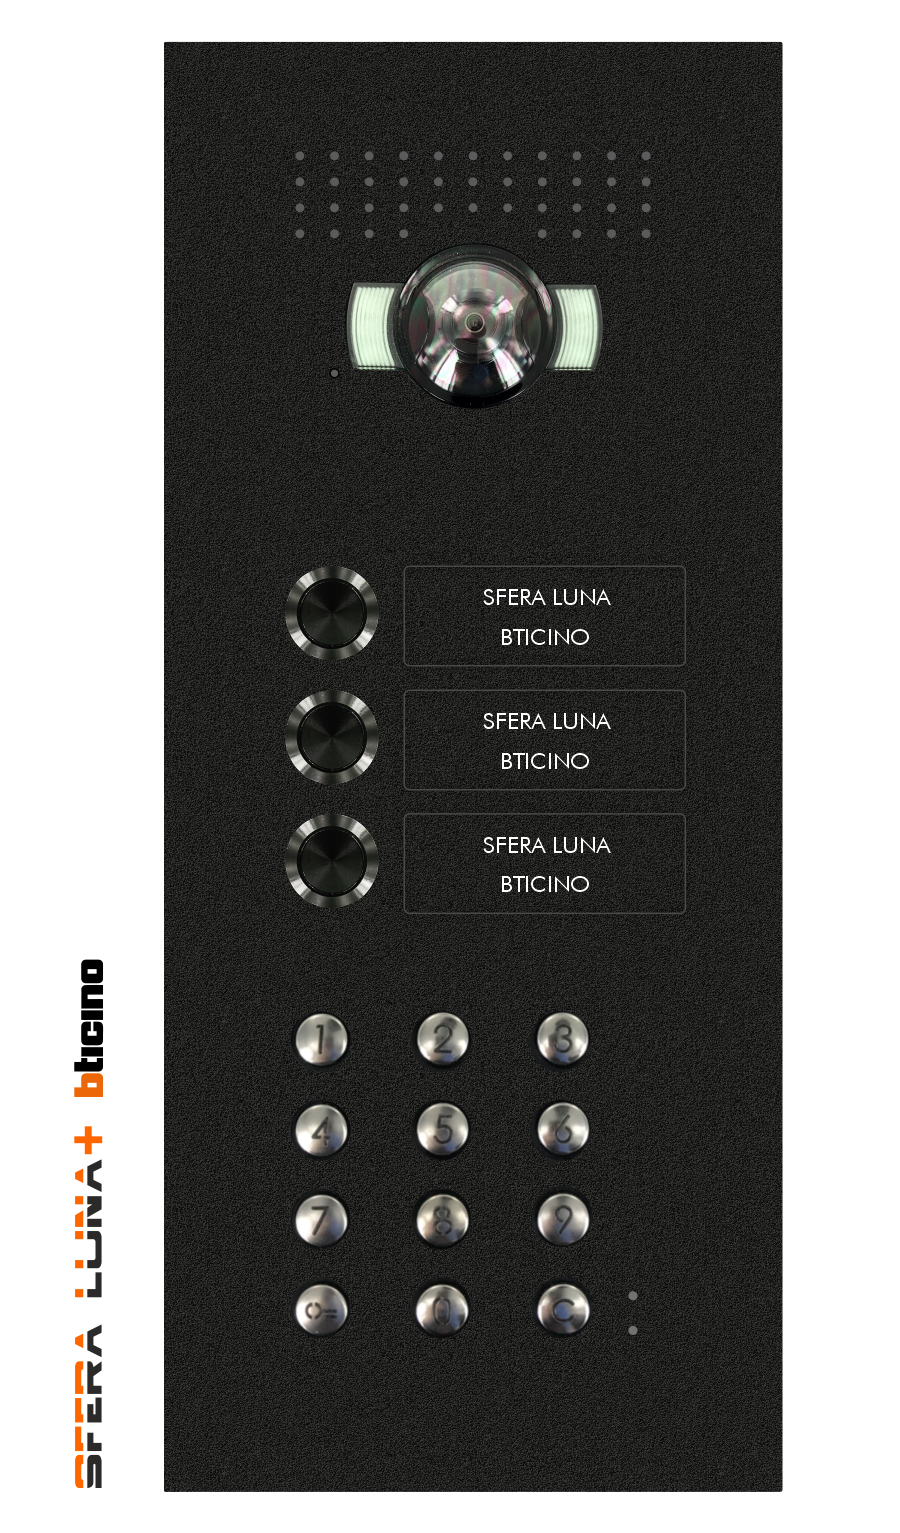   Vidéo-parlophonie SFERA LUNA+3 boutons clavier à code haut de gamme Bticino